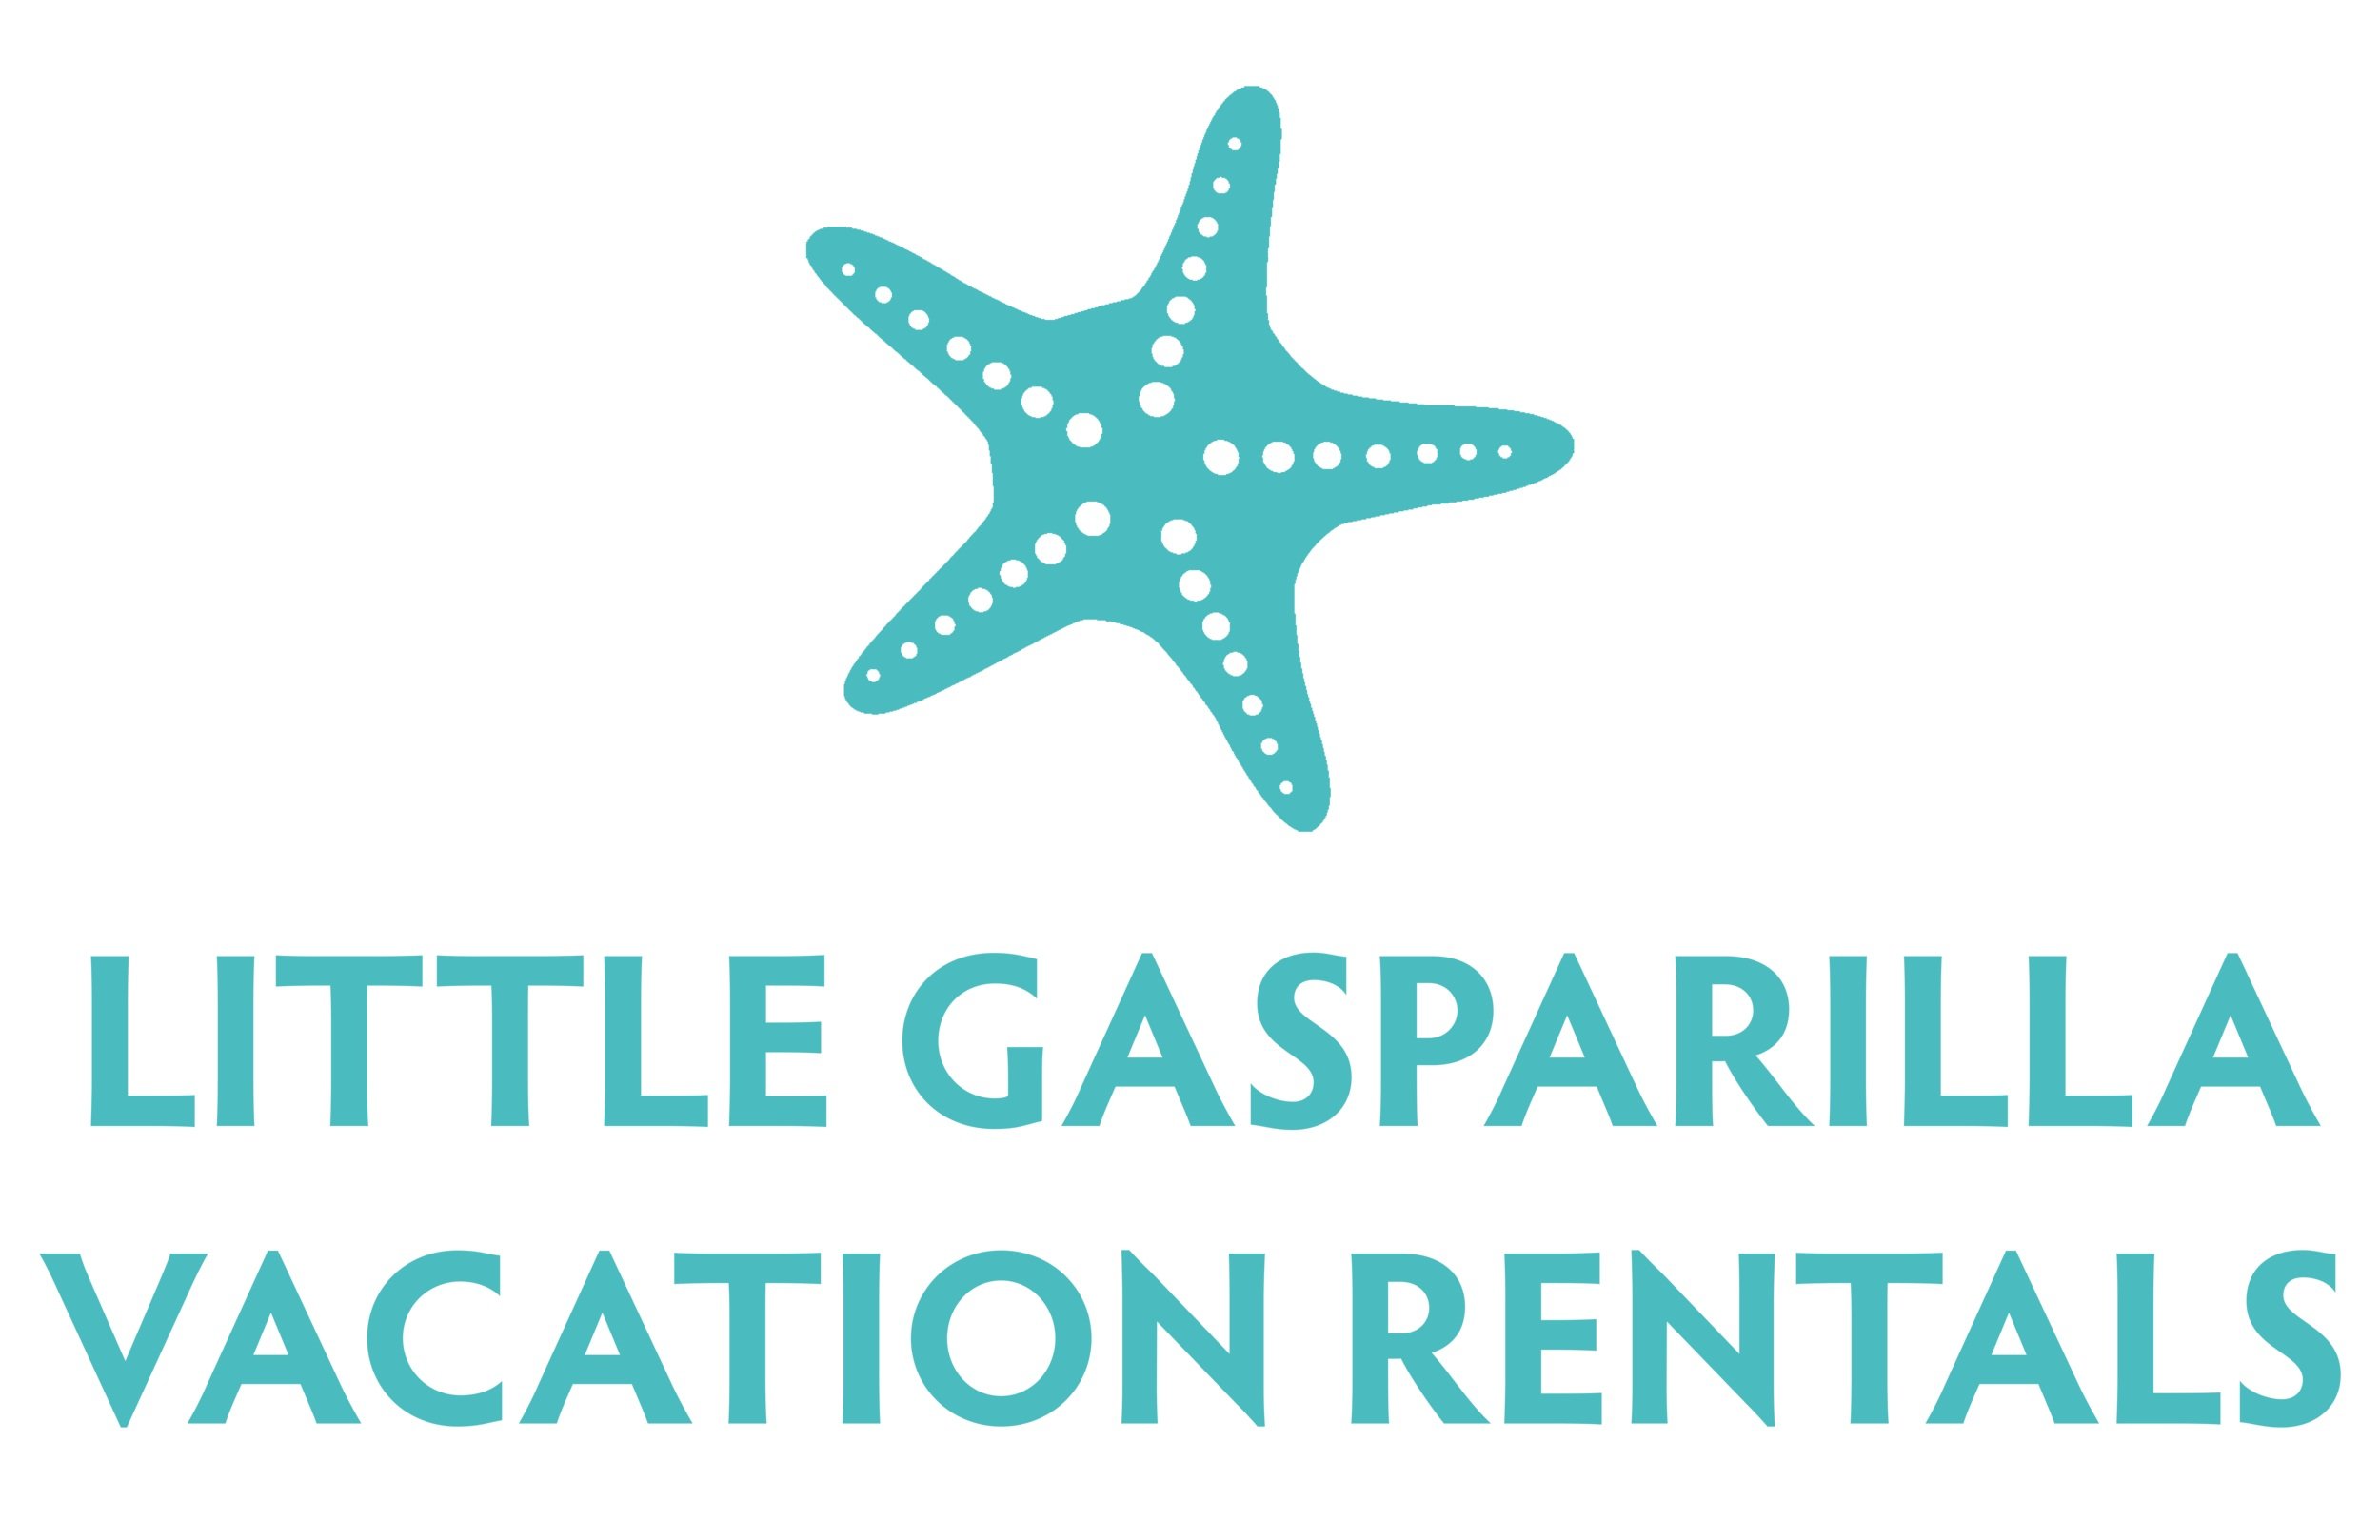 Little Gasparilla Vacation Rentals